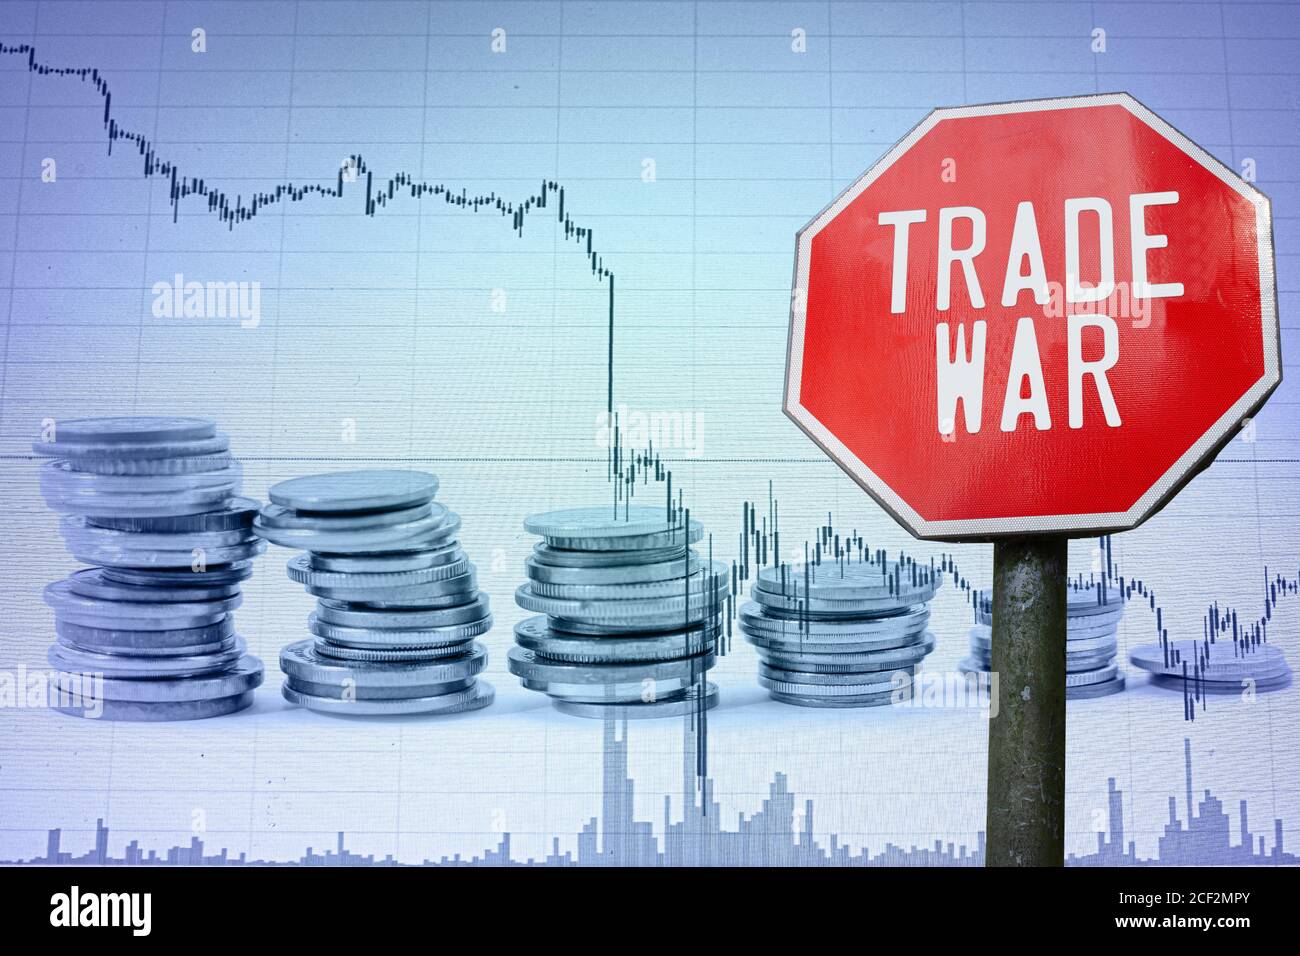 Handelskrieg auf Wirtschaftshintergrund - Grafik und Münzen. Finanzcrash in der Weltwirtschaft. Globale Wirtschaftskrise, Rezession. Stockfoto